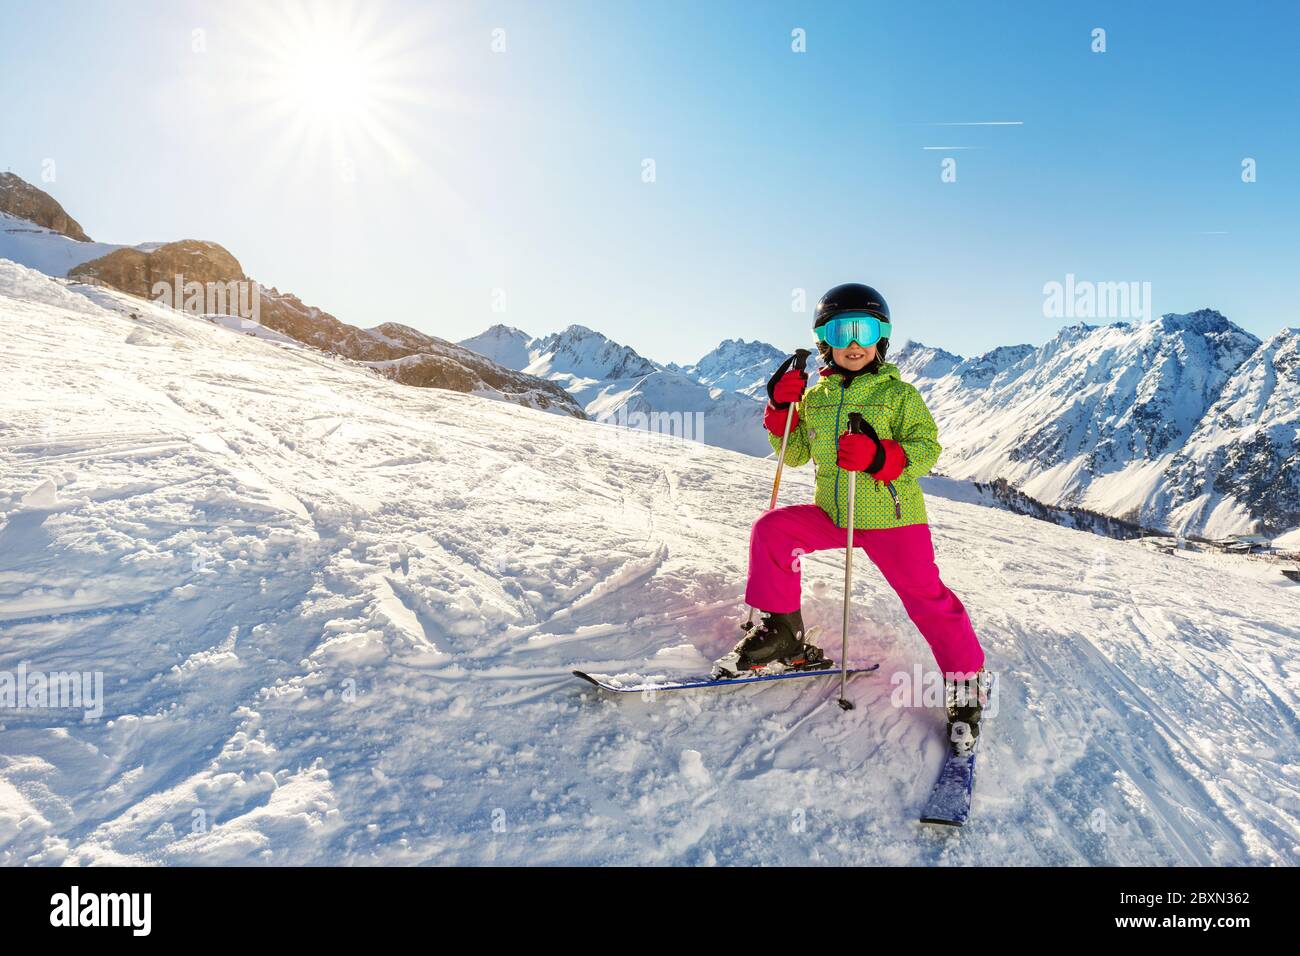 Adorable y adorable niña esquiadora en traje de esquí brillante divertirse montando esquí de montaña en el centro turístico alpino de invierno en un día soleado Fotografía de - Alamy